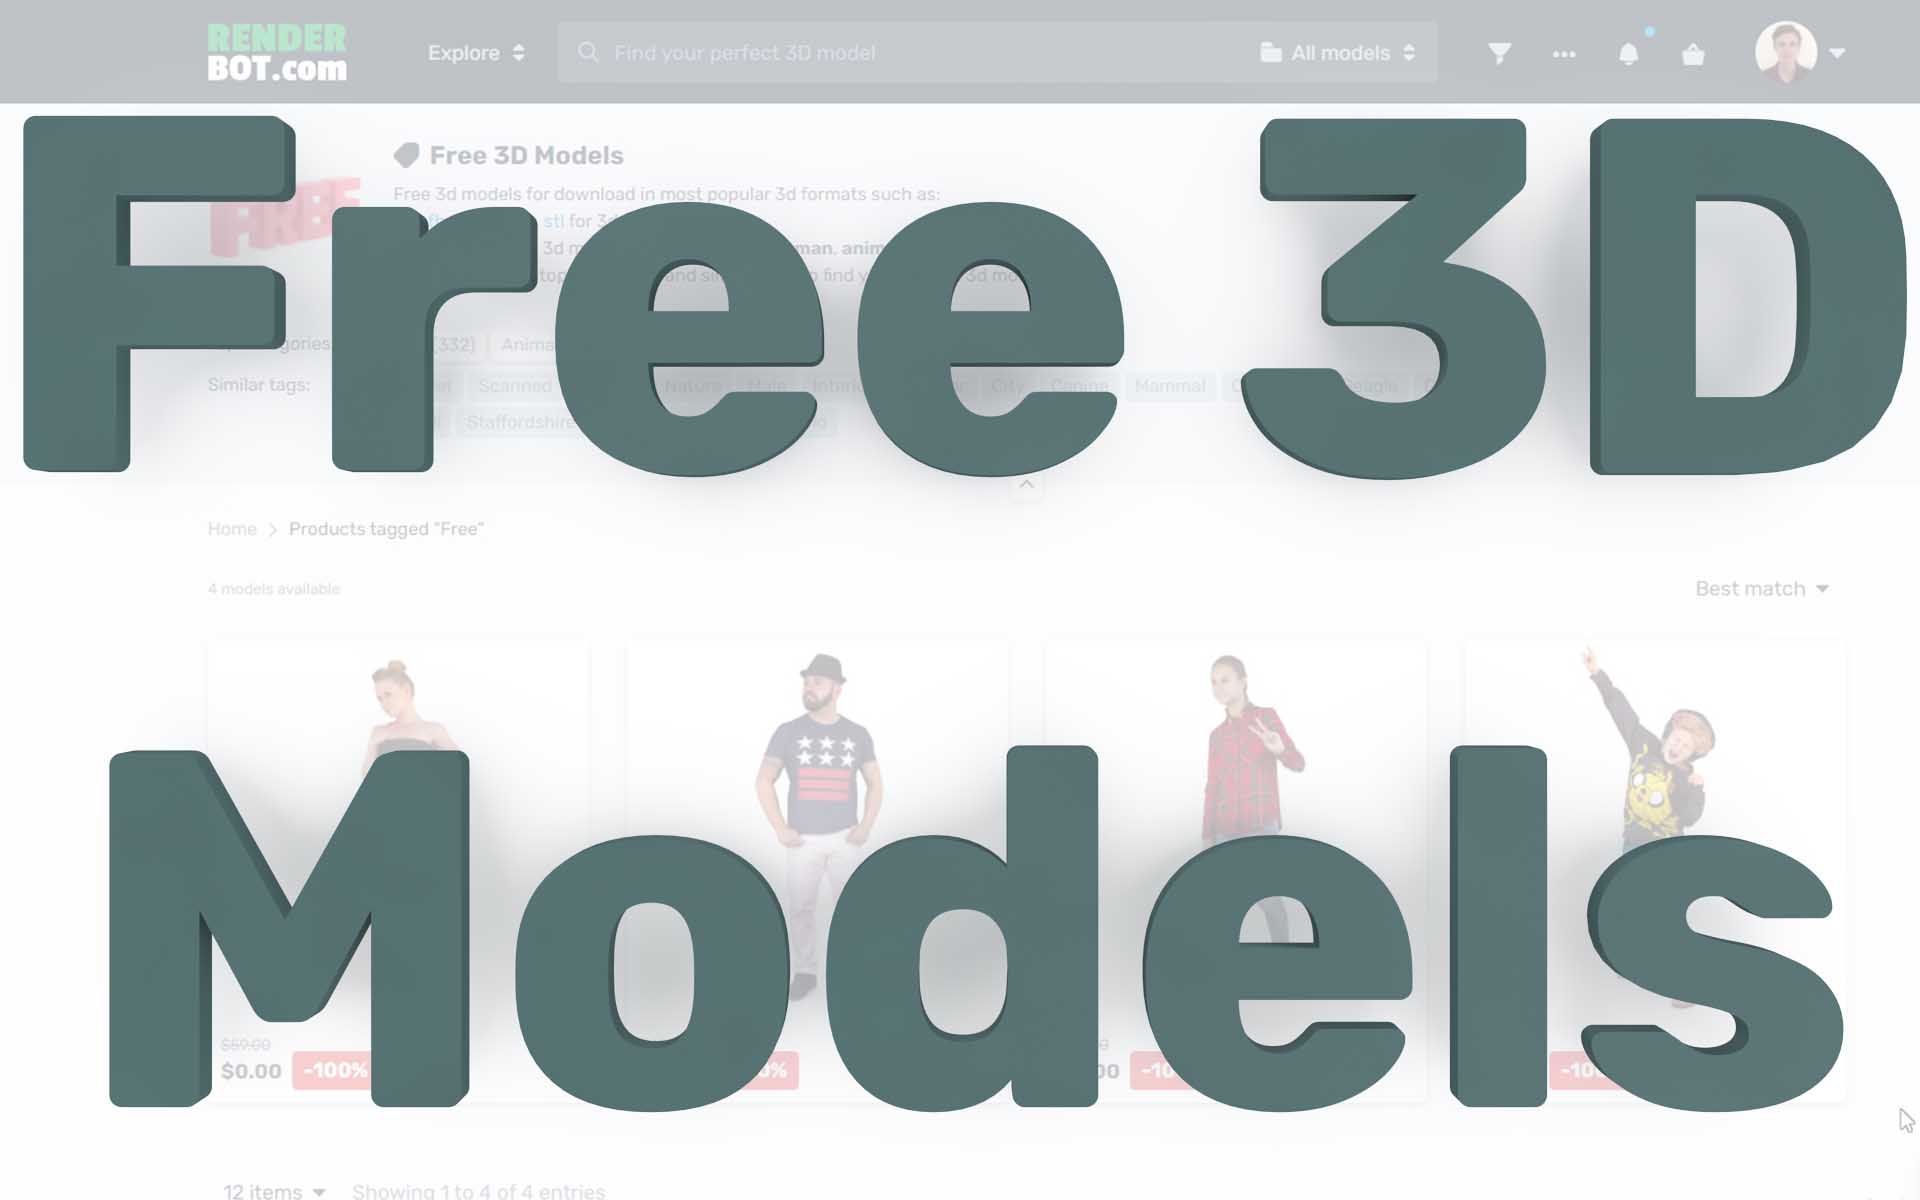 可下载免费3D模型的50个最佳网站